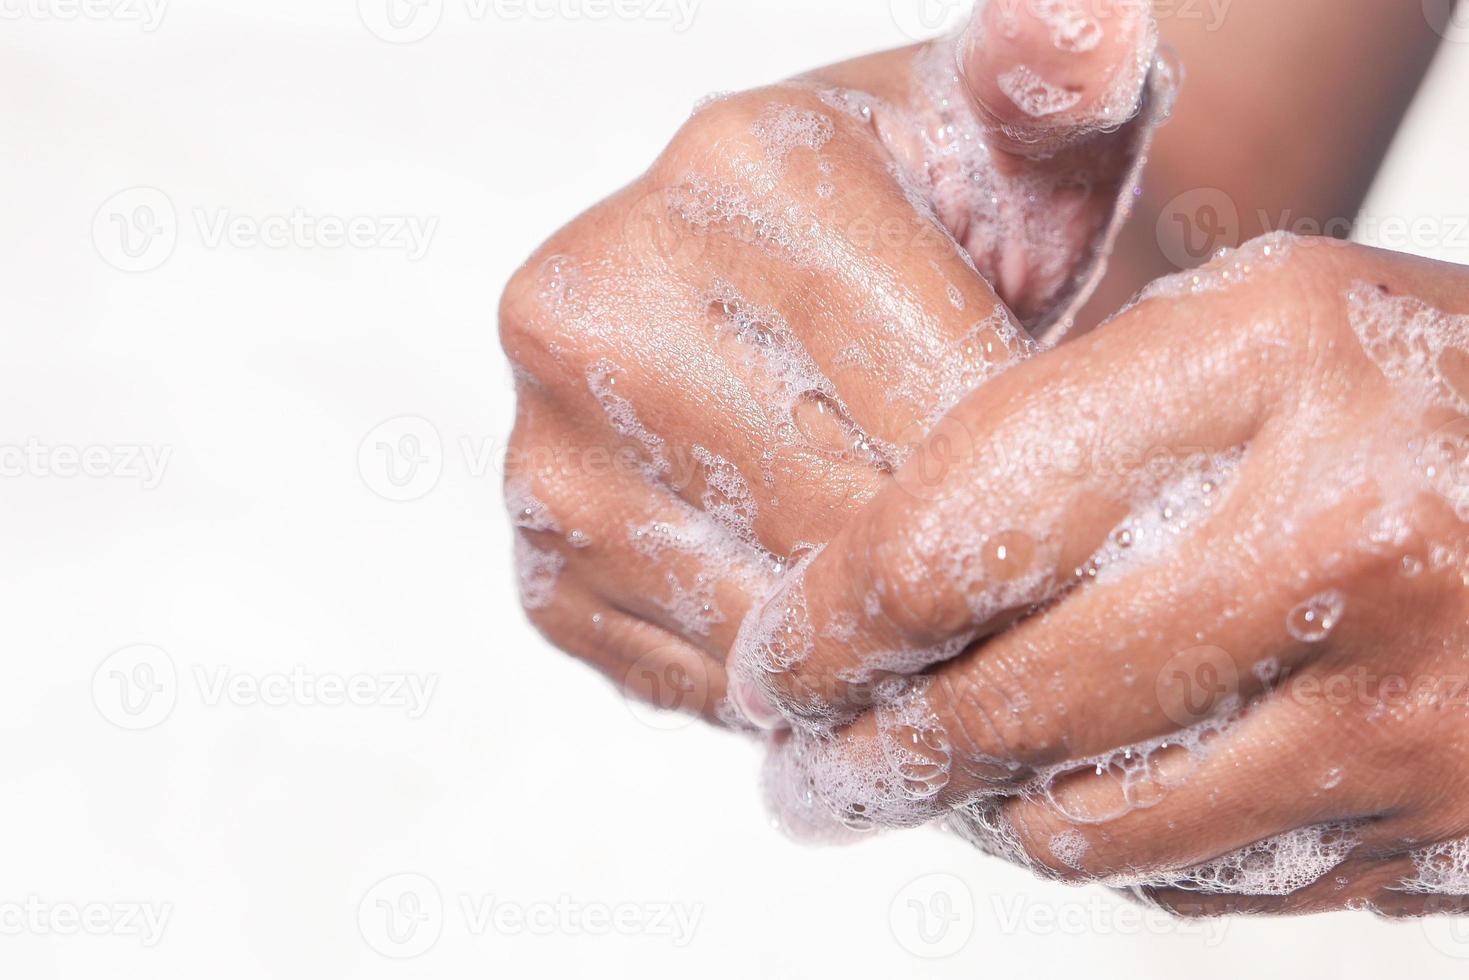 närbild på mannen som tvättar händerna foto